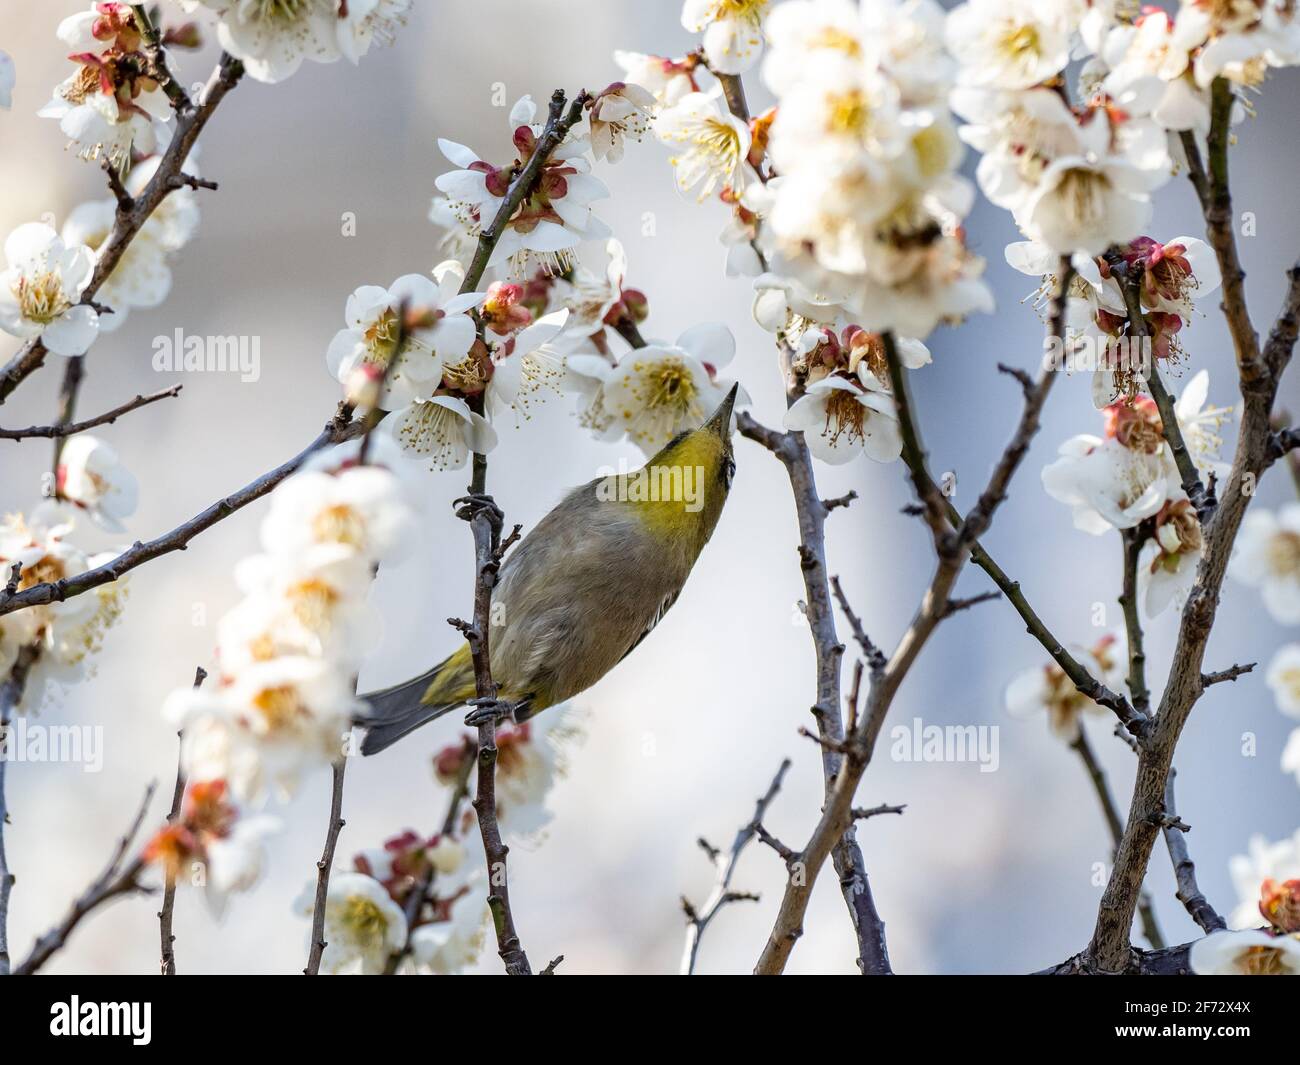 Ein japanisches weißes Auge, auch ein warbling weißes Auge oder Berg weißes Auge, Zosterops japonicus genannt, steht zwischen den Pflaumenblüten des frühen Frühlings Stockfoto